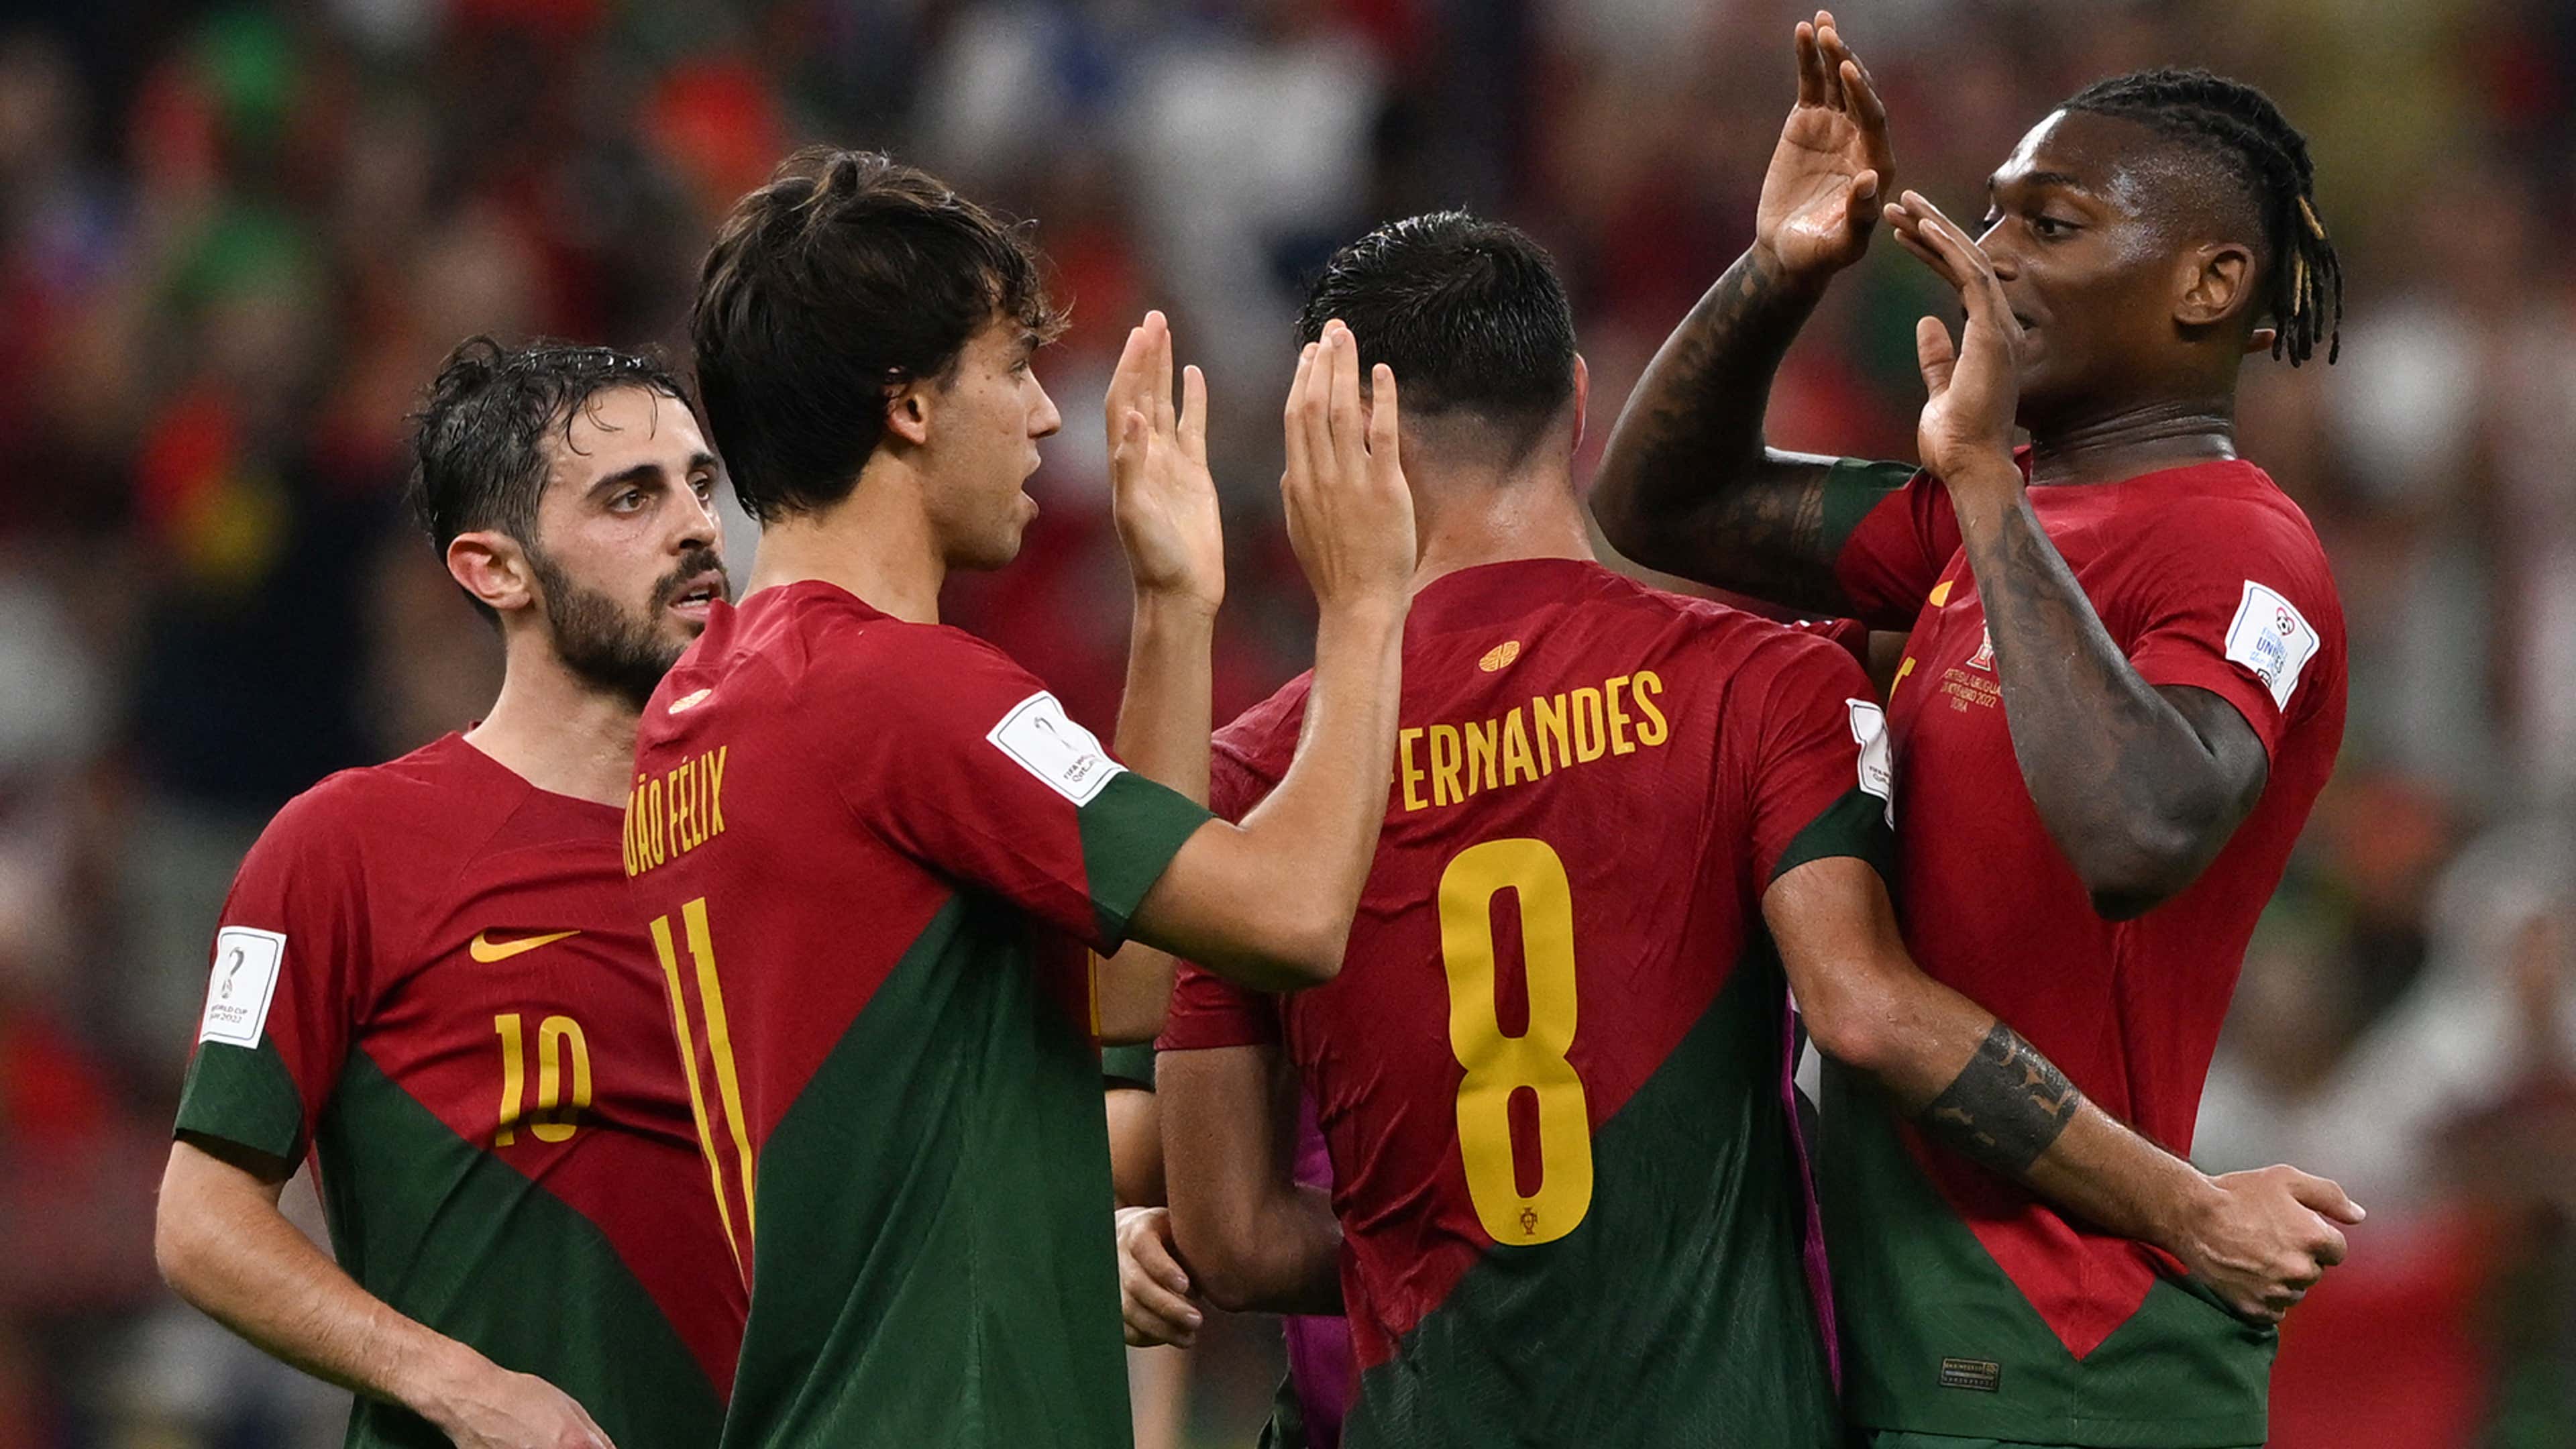 Copa do Mundo encerra oitavas de final nesta terça com jogos de Portugal e  Espanha